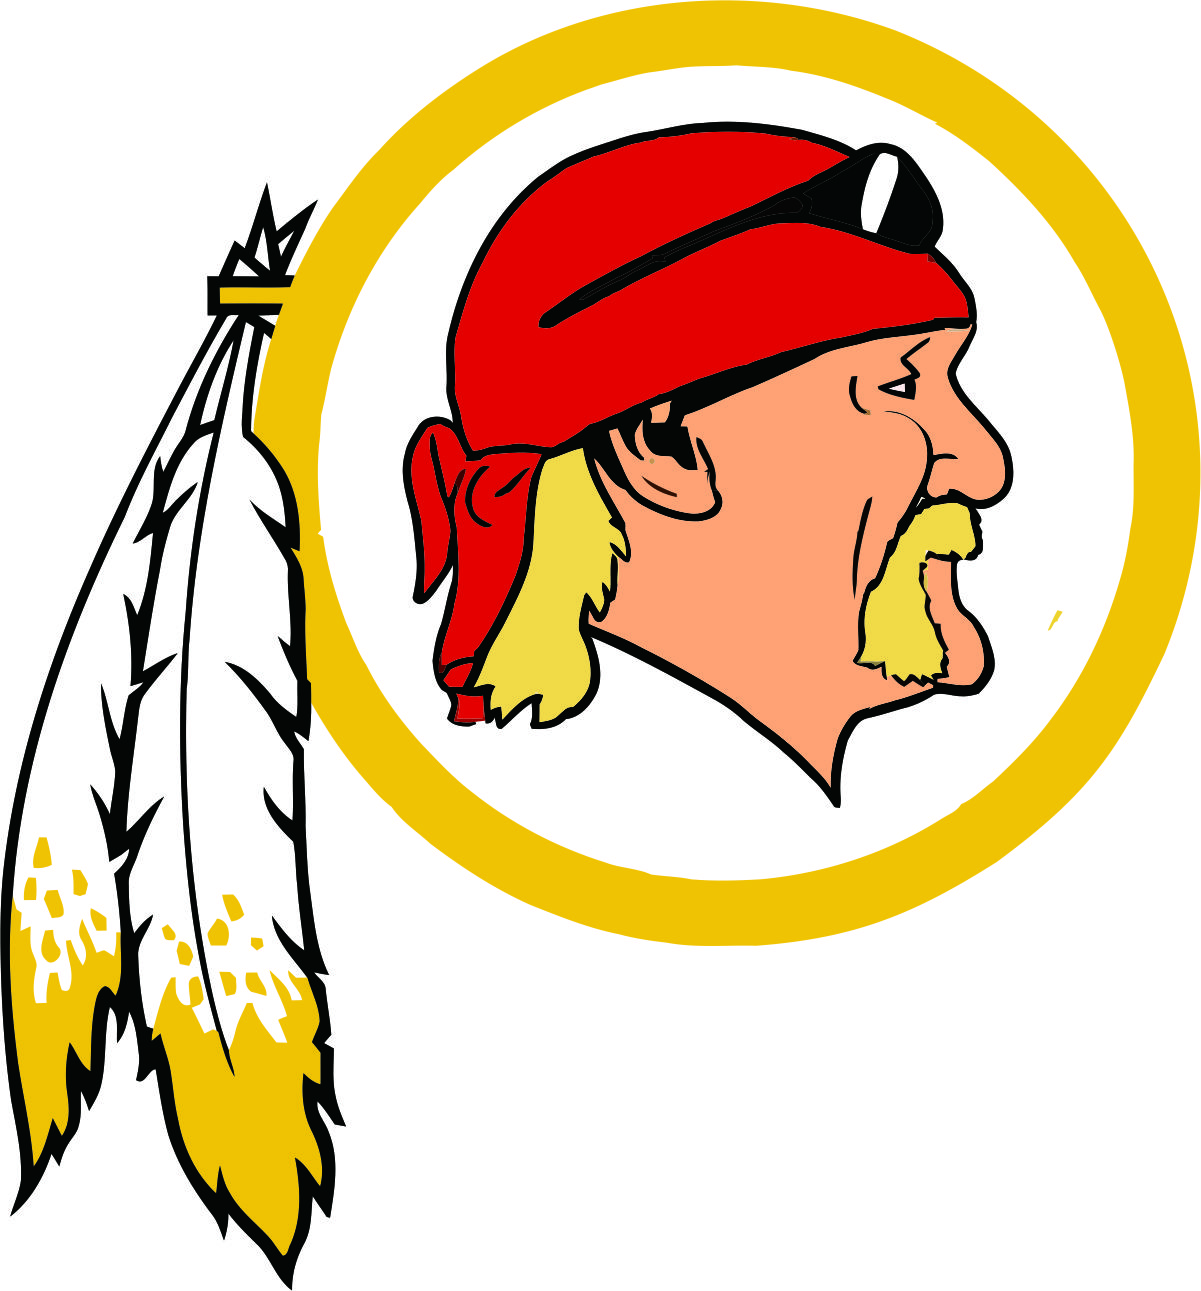 Washington Redskins Hulk Hogan Logo fabric transfer